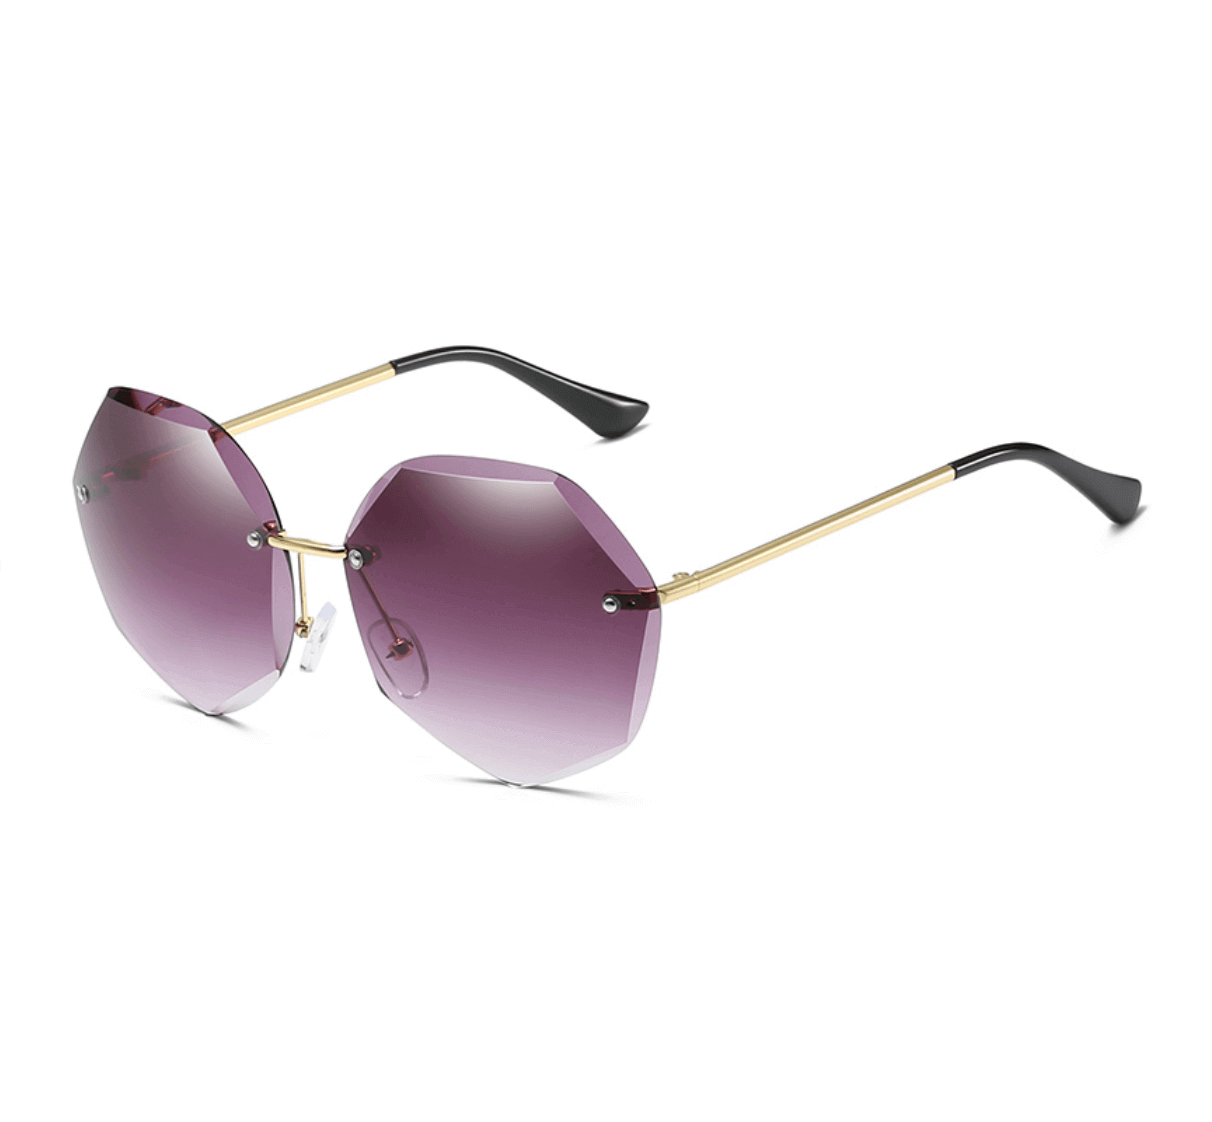 Custom Rimless Sunglasses from China - Custom Sunglasses Manufacturer - Custom Eyewear Manufacturers in China